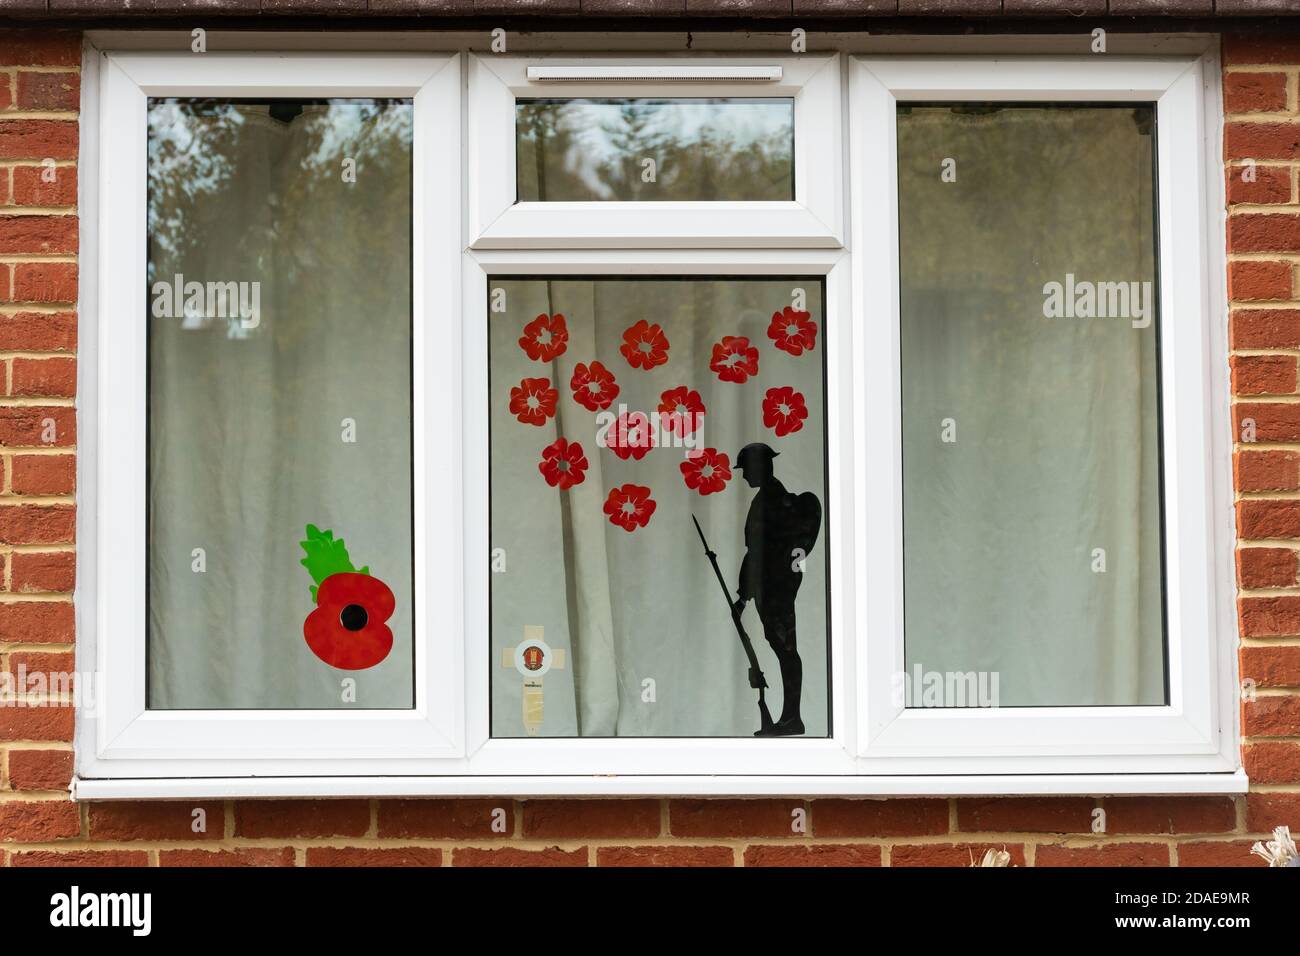 Fenêtre décorée pour le jour du souvenir avec des coquelicots et une silhouette de soldat, commémorant l'armistice pendant la pandémie de covid-19 du coronavirus 2020, Royaume-Uni Banque D'Images